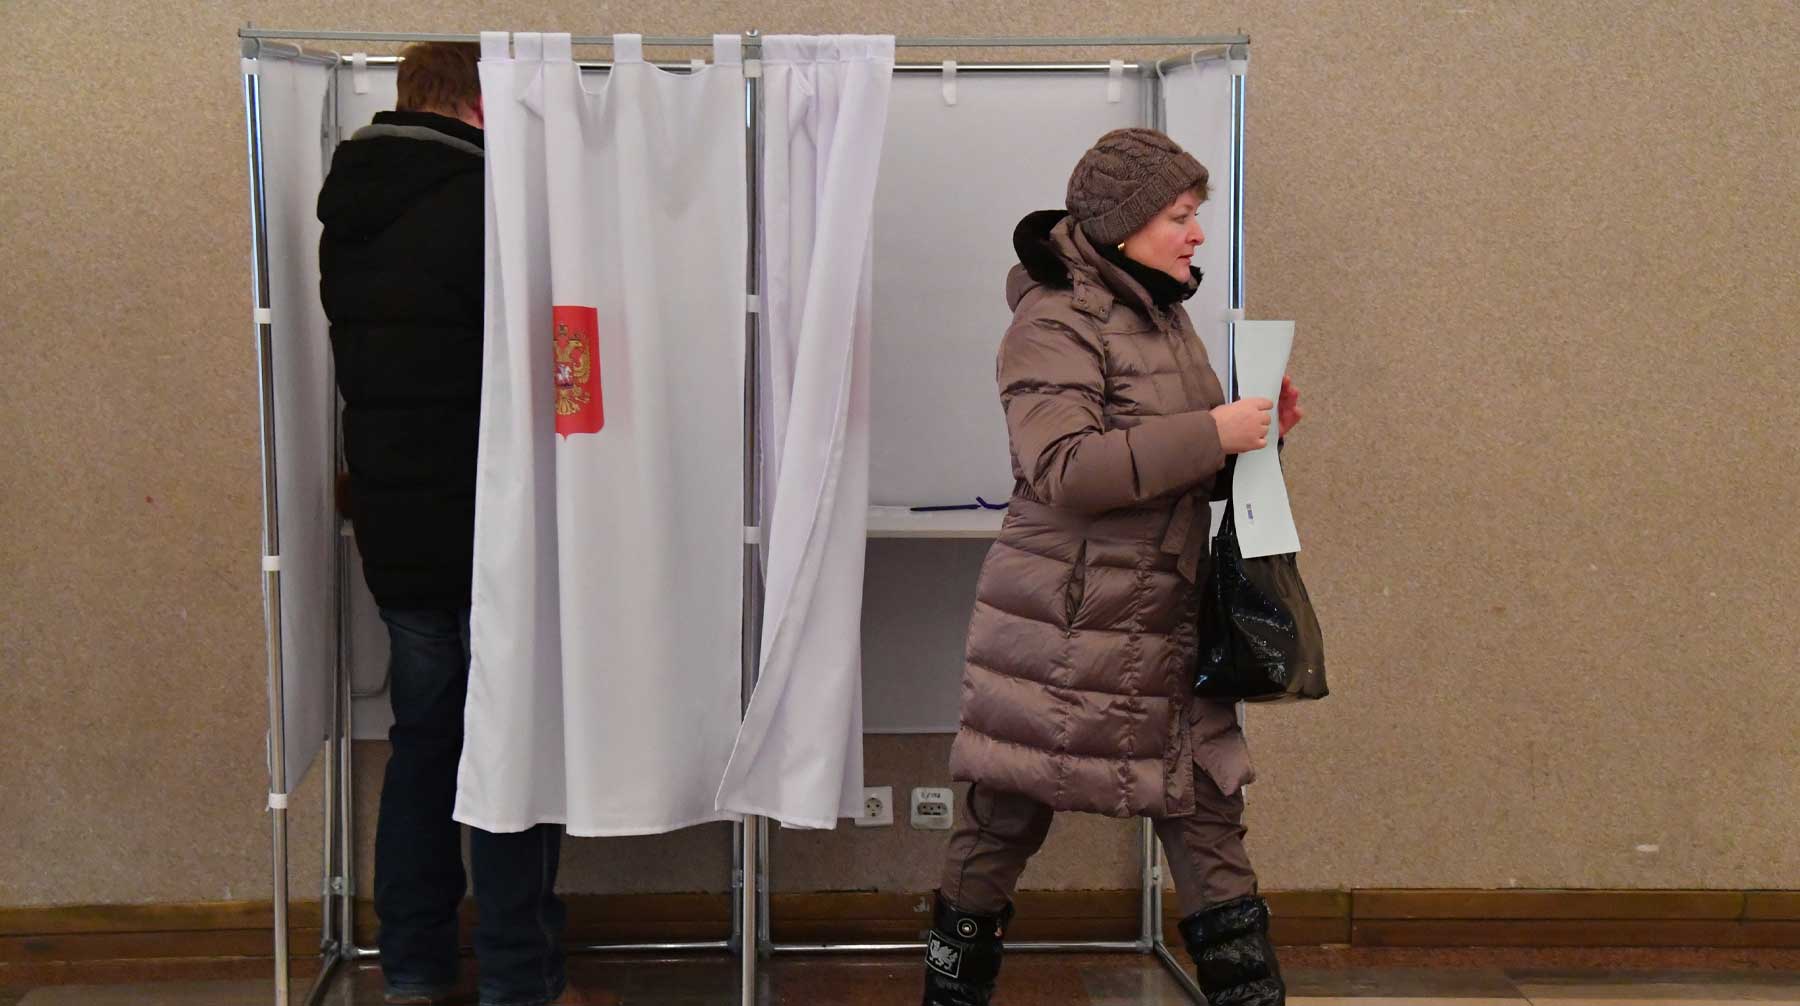 Видеонаблюдения не будет на избирательных участках в больницах, СИЗО и в местах, где будут голосовать военнослужащие Фото: © GLOBAL LOOK press / Komsomolskaya Pravda